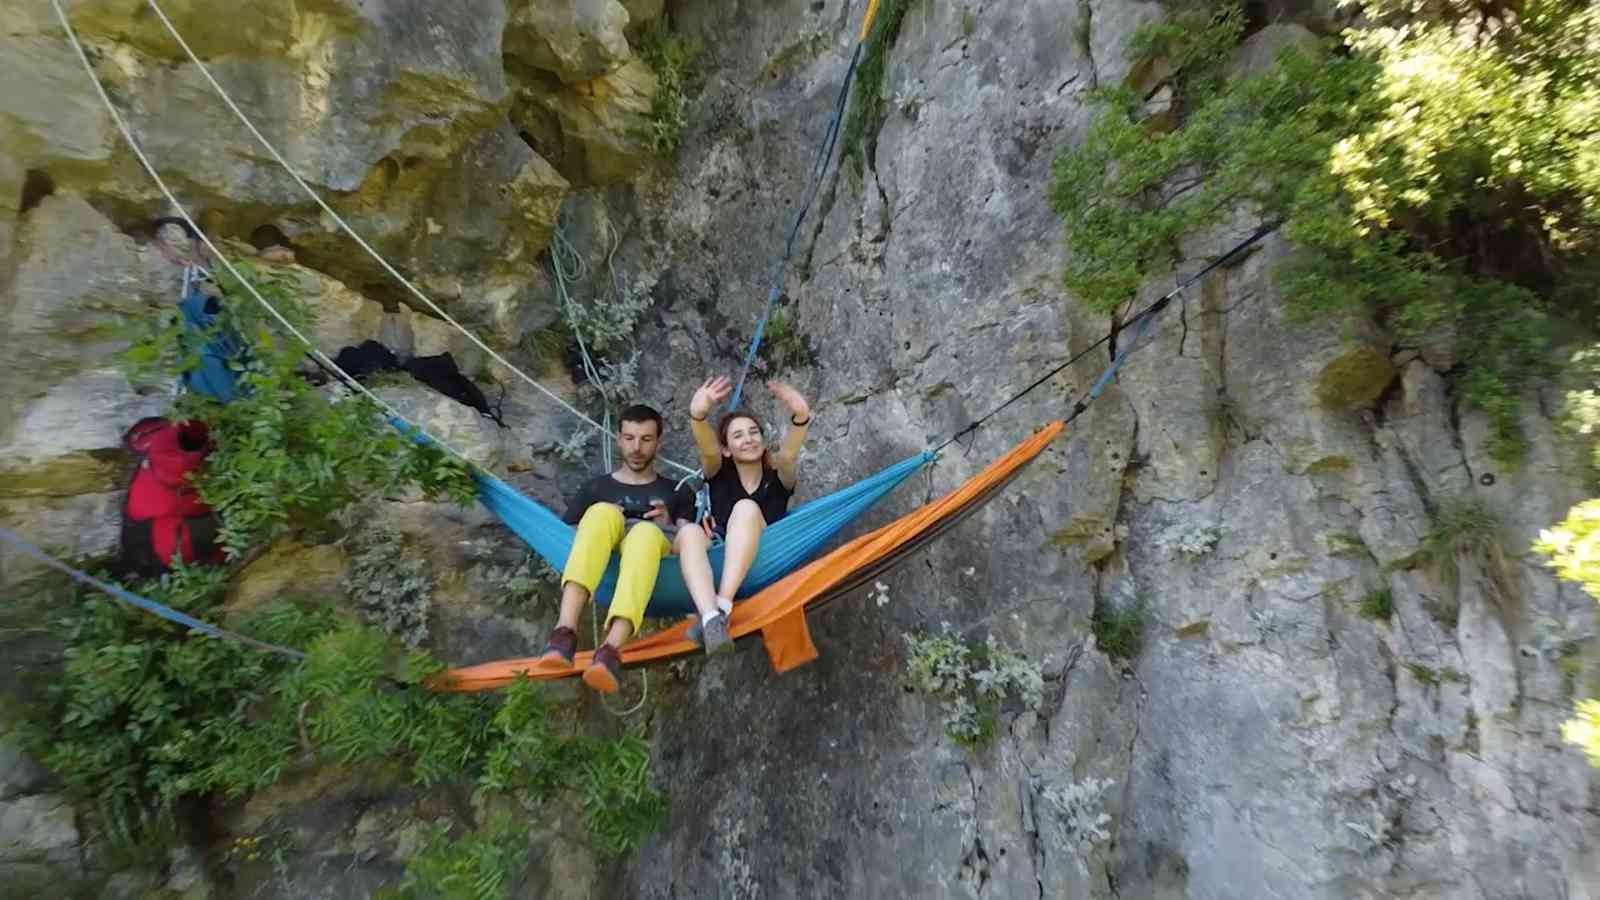 Yalovalı ekstrem dağcılık sporcusu 2 arkadaş, yüksek kayalıklarda yerden 100 metre yükseklikte kurdukları hamak üzerinde 1 gecelik kamp yaptılar ...